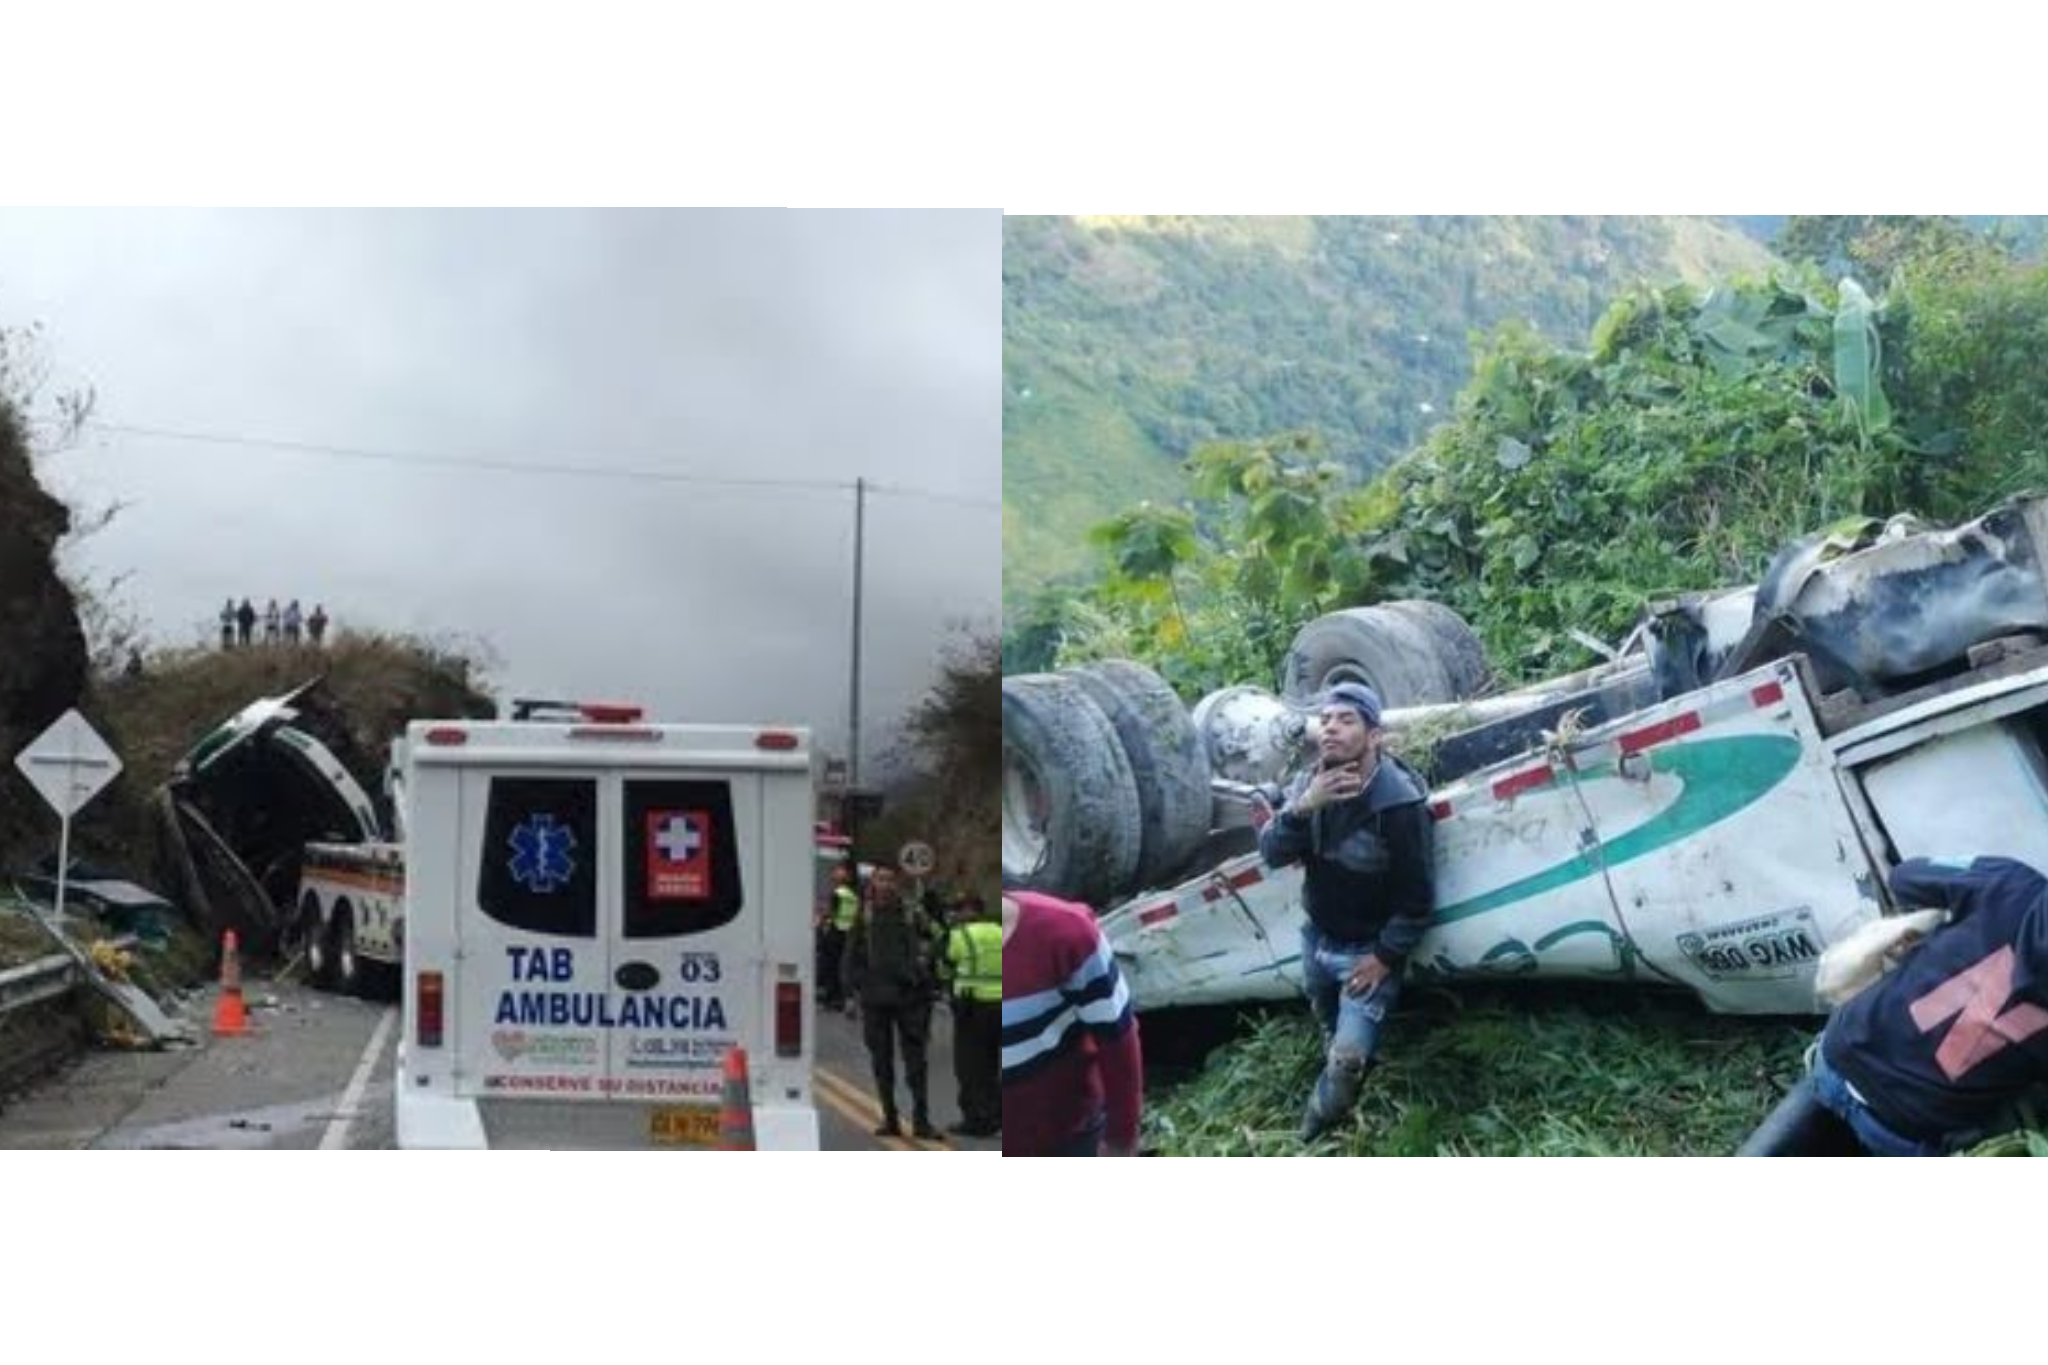 12 muertos dejó accidente de tránsito en la vía Pasto – Cali, mientras en otro siniestro en Chaparral – Tolima se habla de 4 muertos y 15 heridos